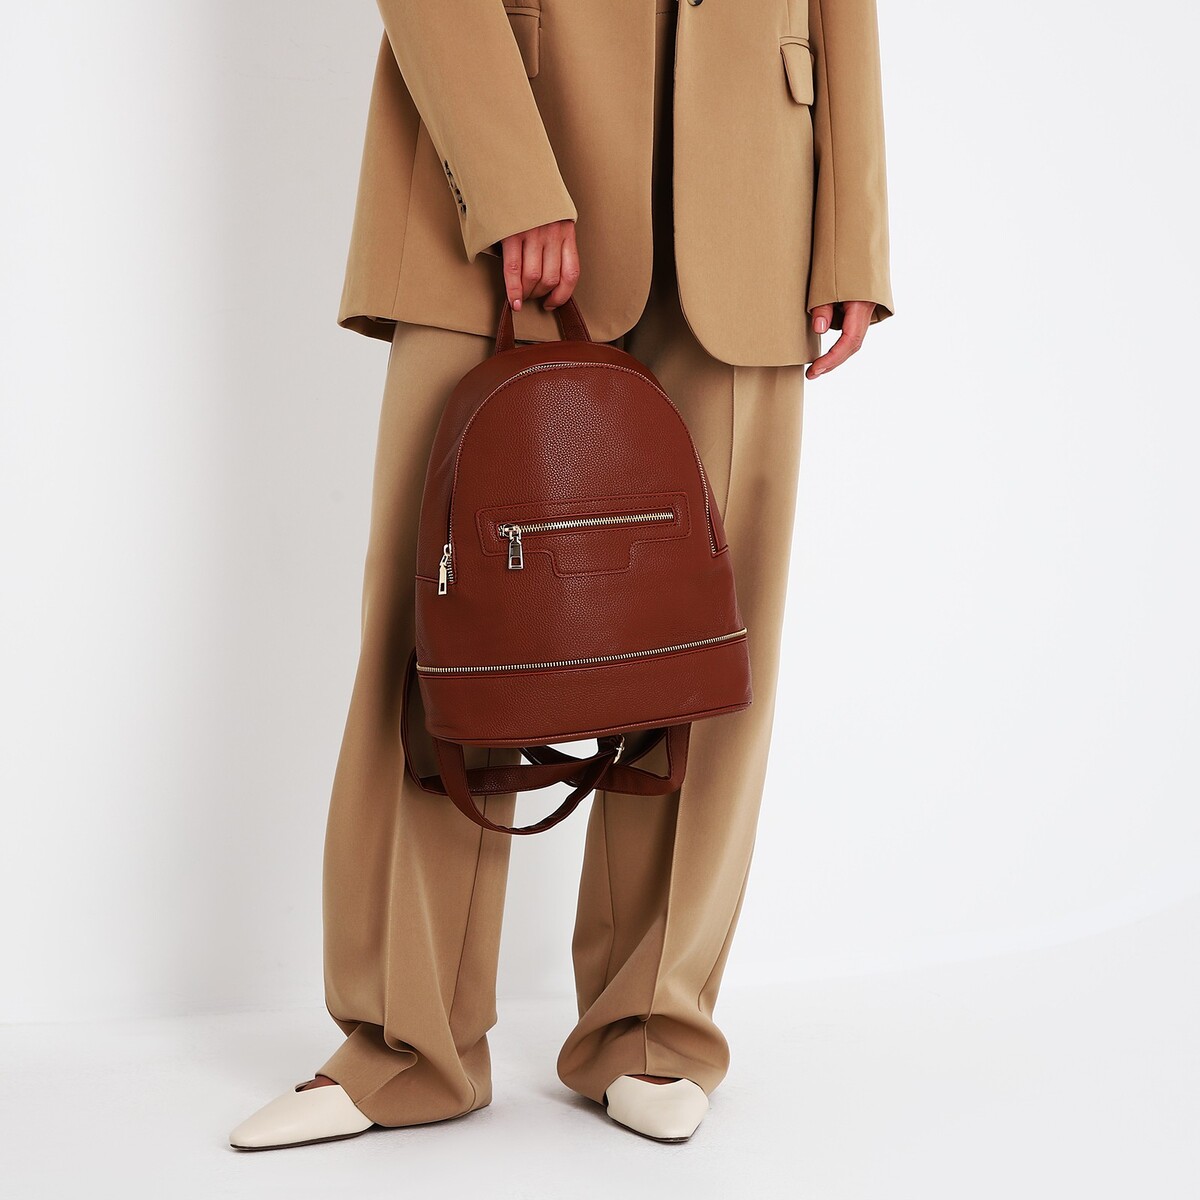 Рюкзак женский из искусственной кожи на молнии, 1 карман, цвет коричневый рюкзак nuovita capcap tour marrone коричневый